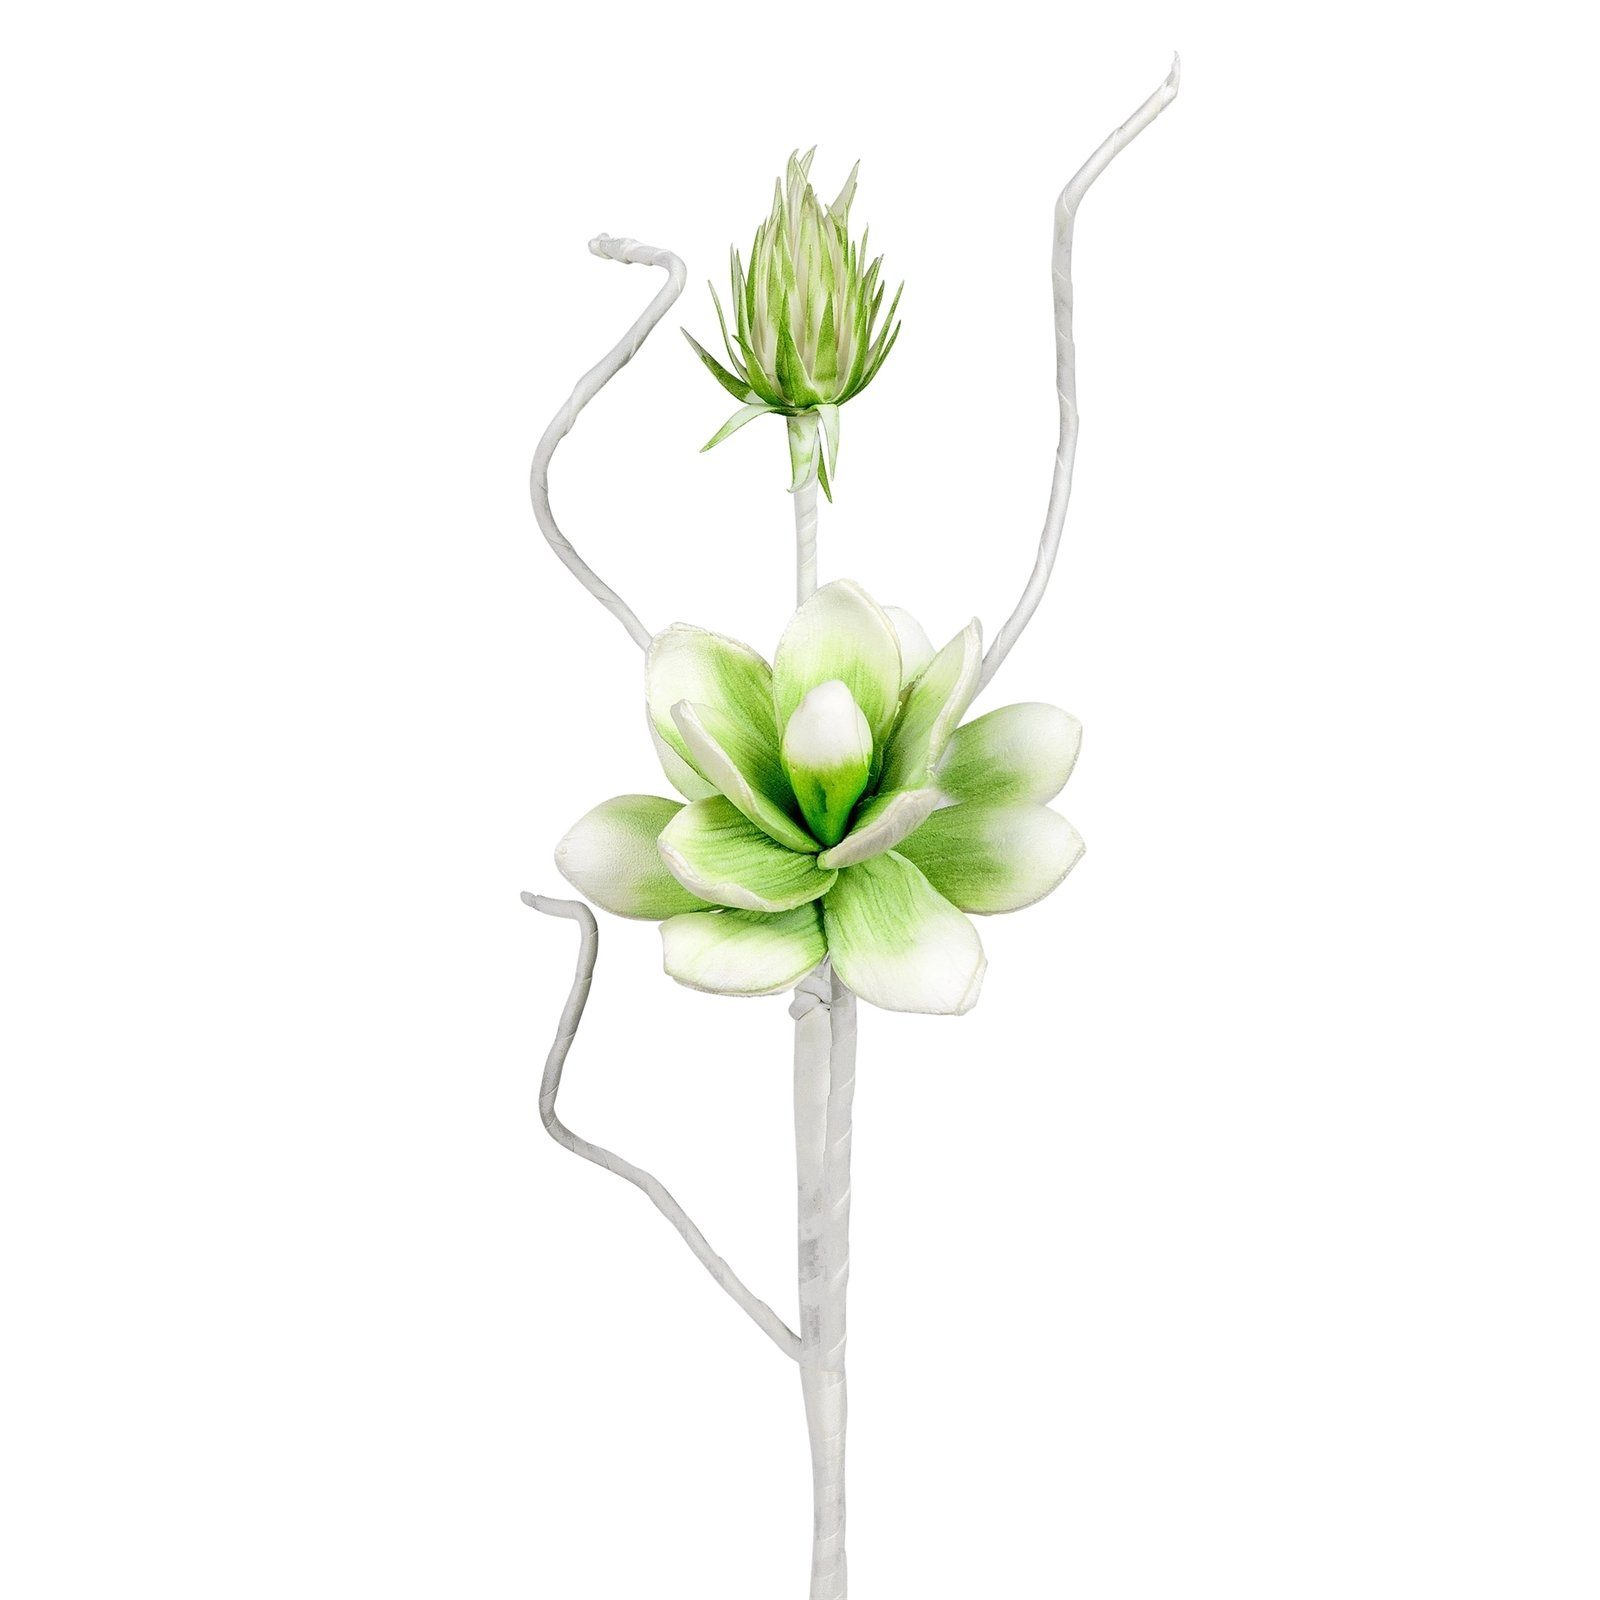 Kunstblume Blütenzweig weiß-grün, cm Höhe formano, 54